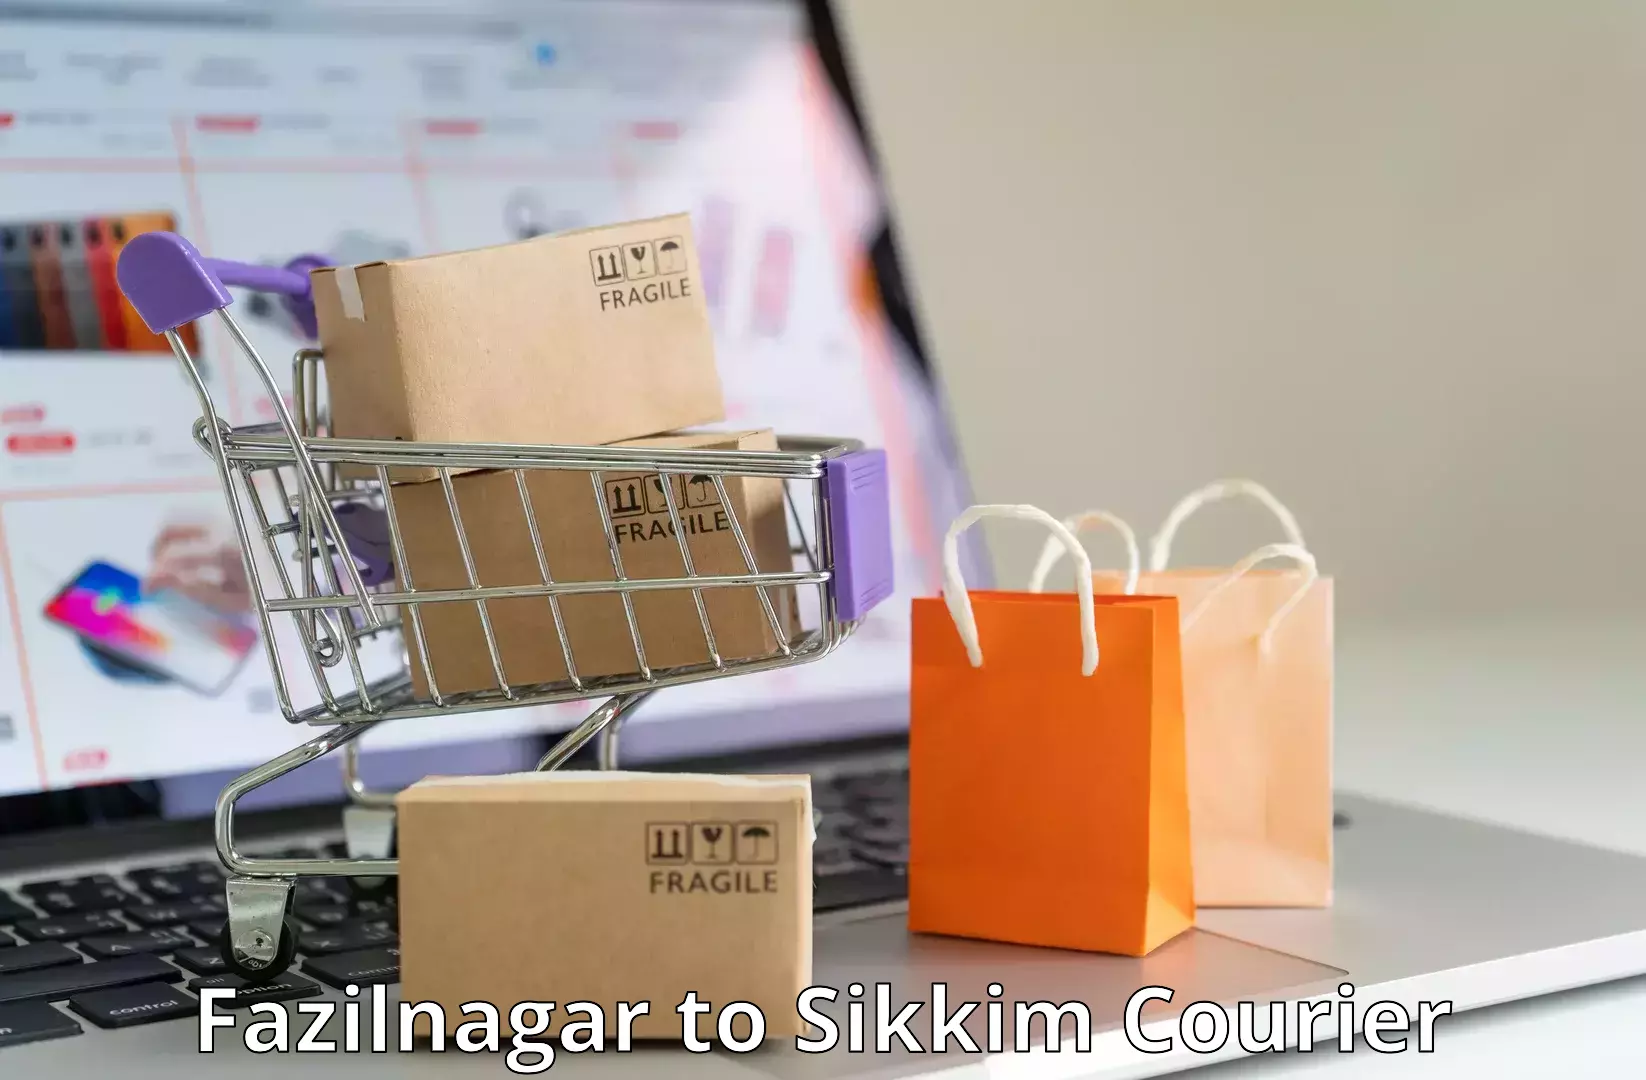 Smart shipping technology Fazilnagar to NIT Sikkim